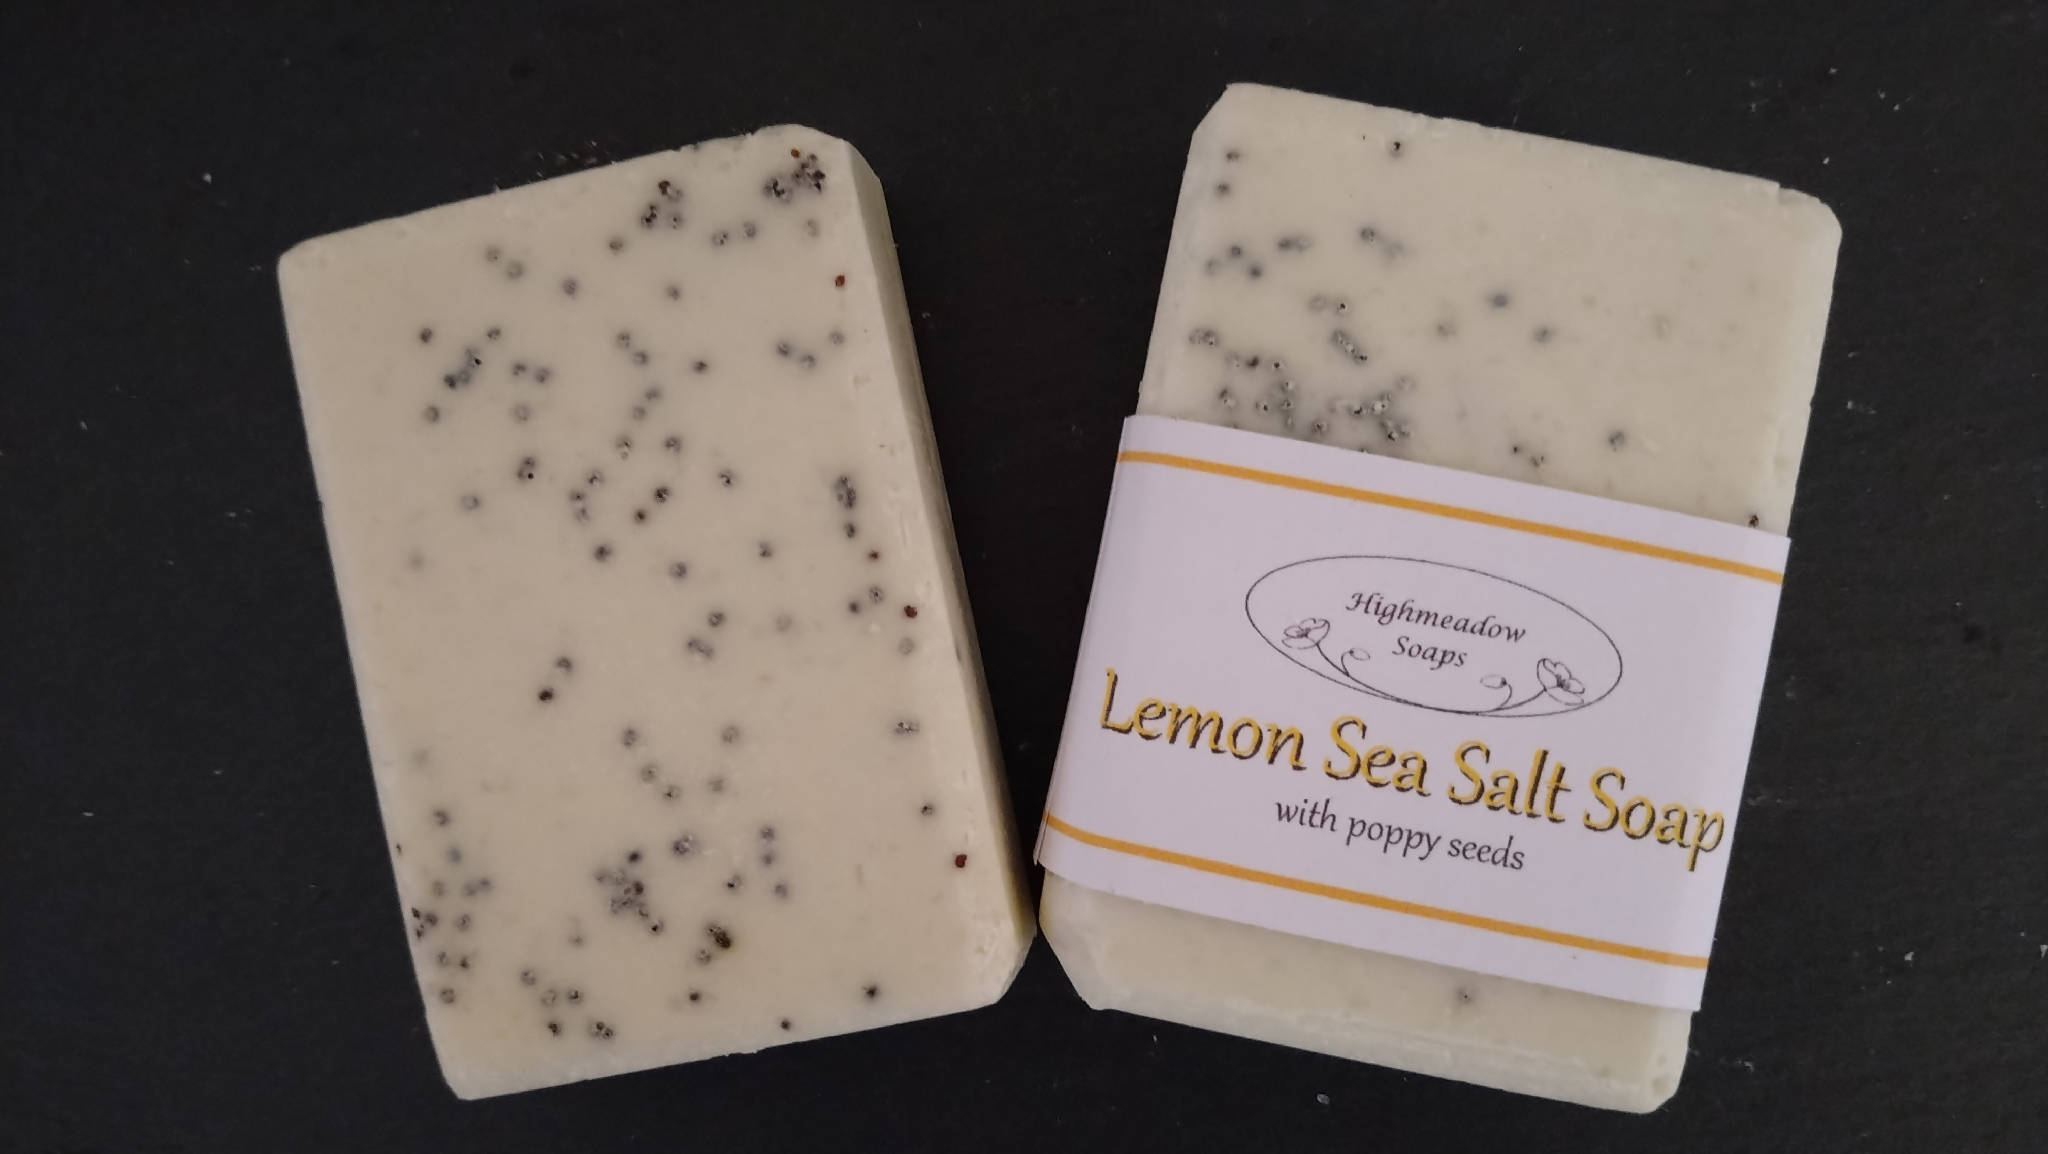 Lemon Sea Salt soap